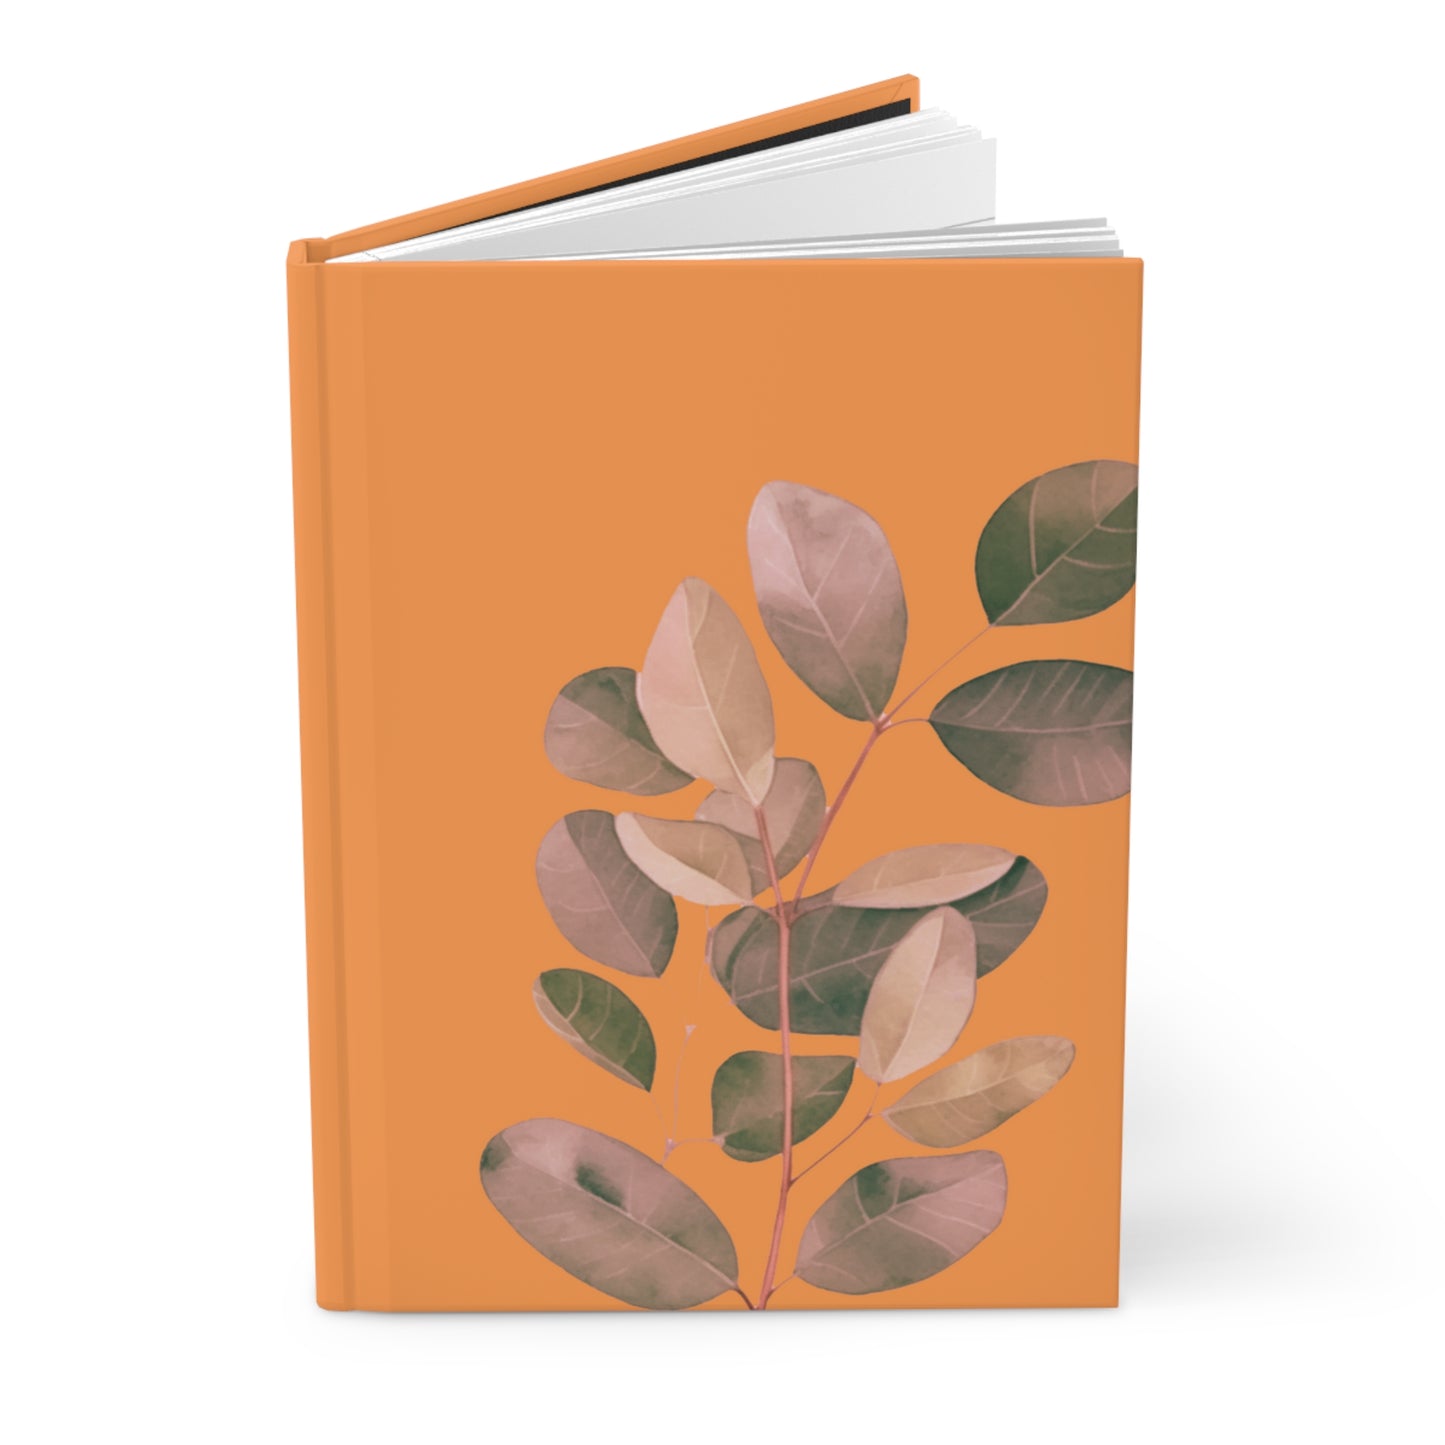 Leaf Vine Hardcover Journal, orange Color Journal, Orange Journal, Cute Hardcover Journals, Cute Journals, Flower Design Journals. Flower Journals, Personal Journal, Hardcover Journal Matte